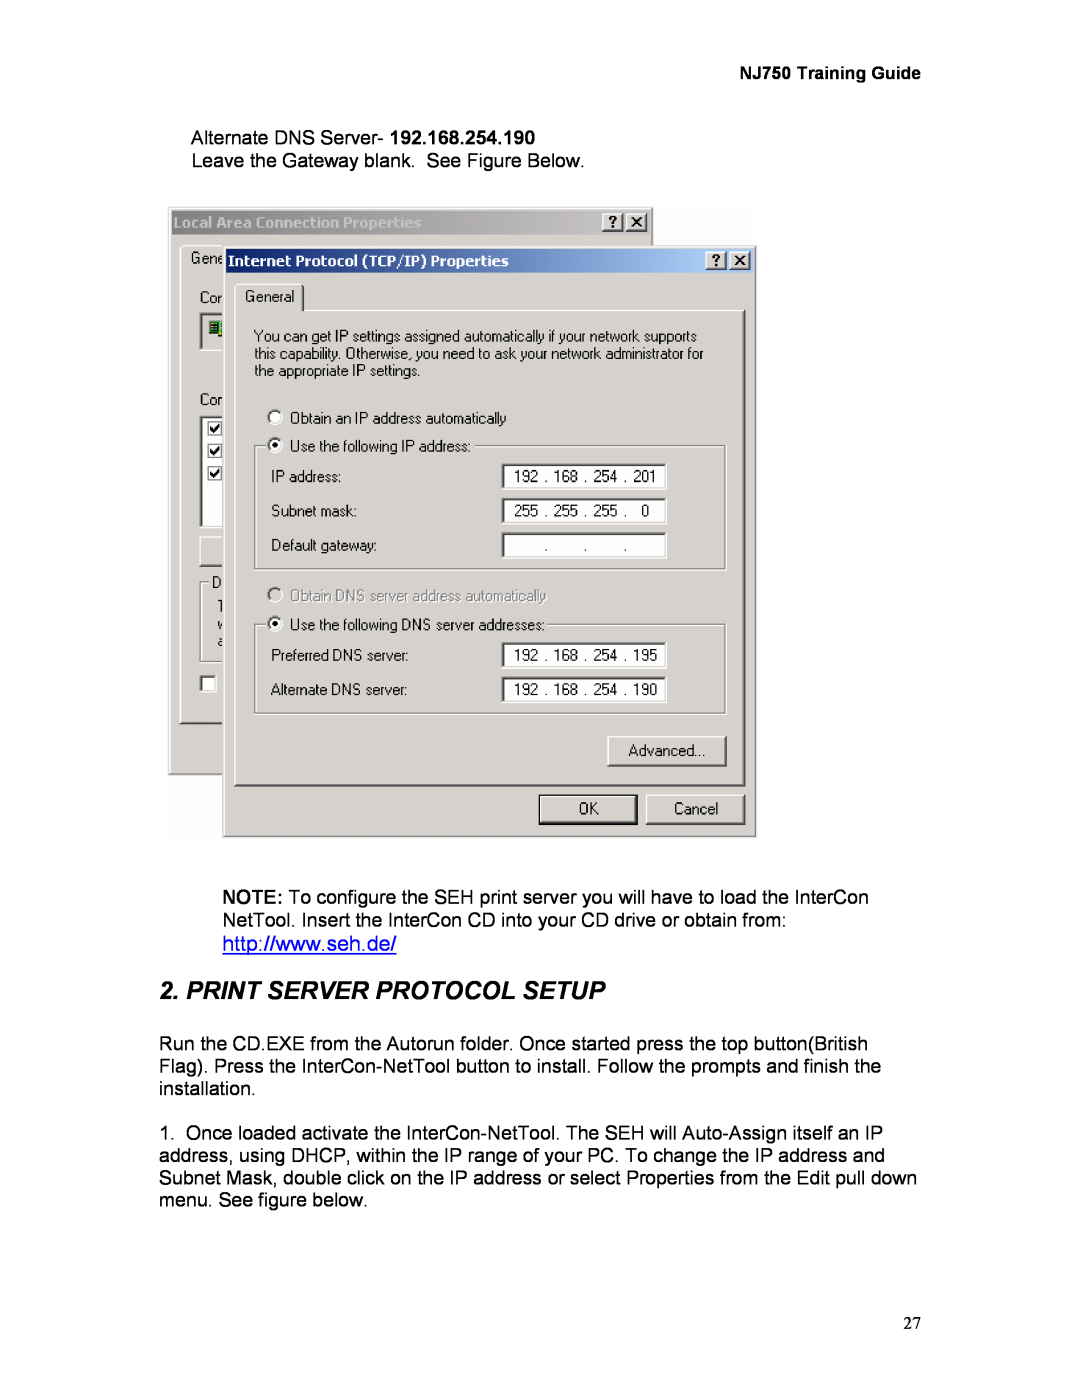 Kodak 750 manual Print Server Protocol Setup 